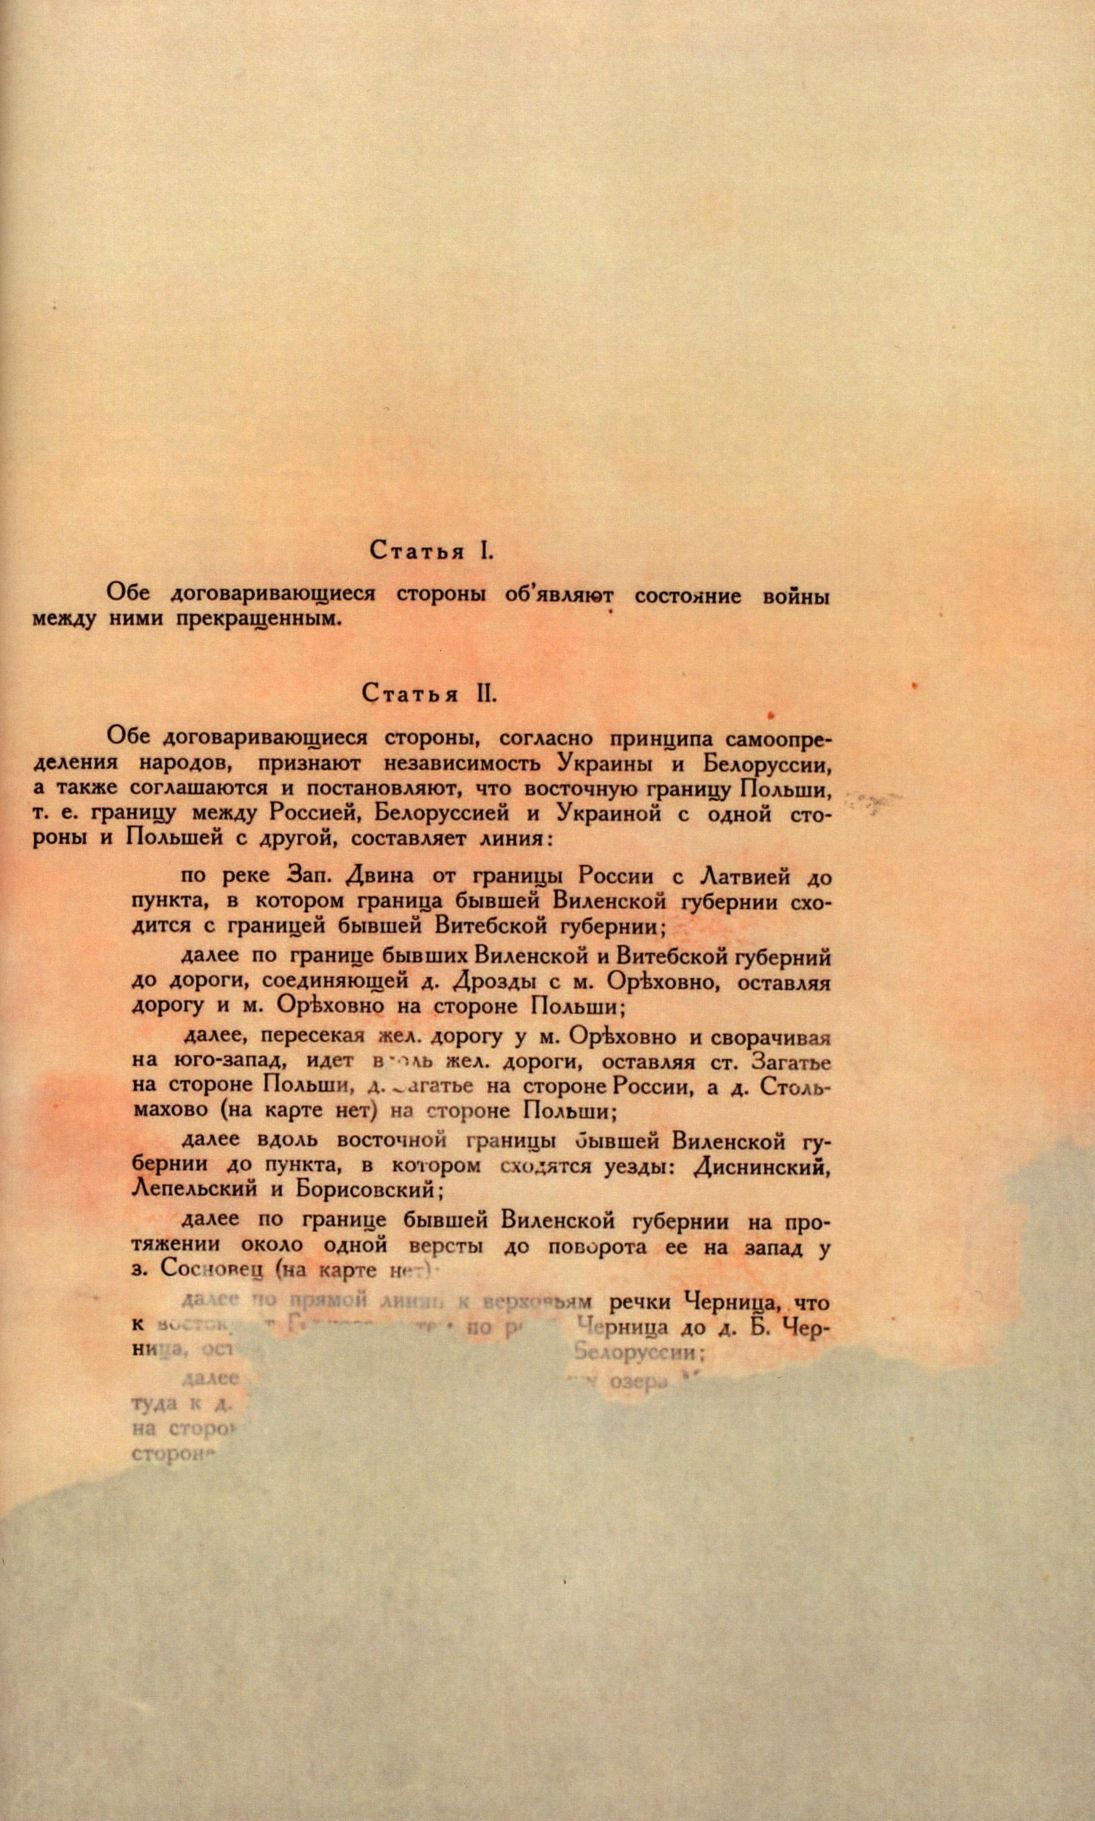 Traktat Pokoju między Polską a Rosją i Ukrainą podpisany w Rydze dnia 18 marca 1921 roku, s. 67, MSZ, sygn. 6739.